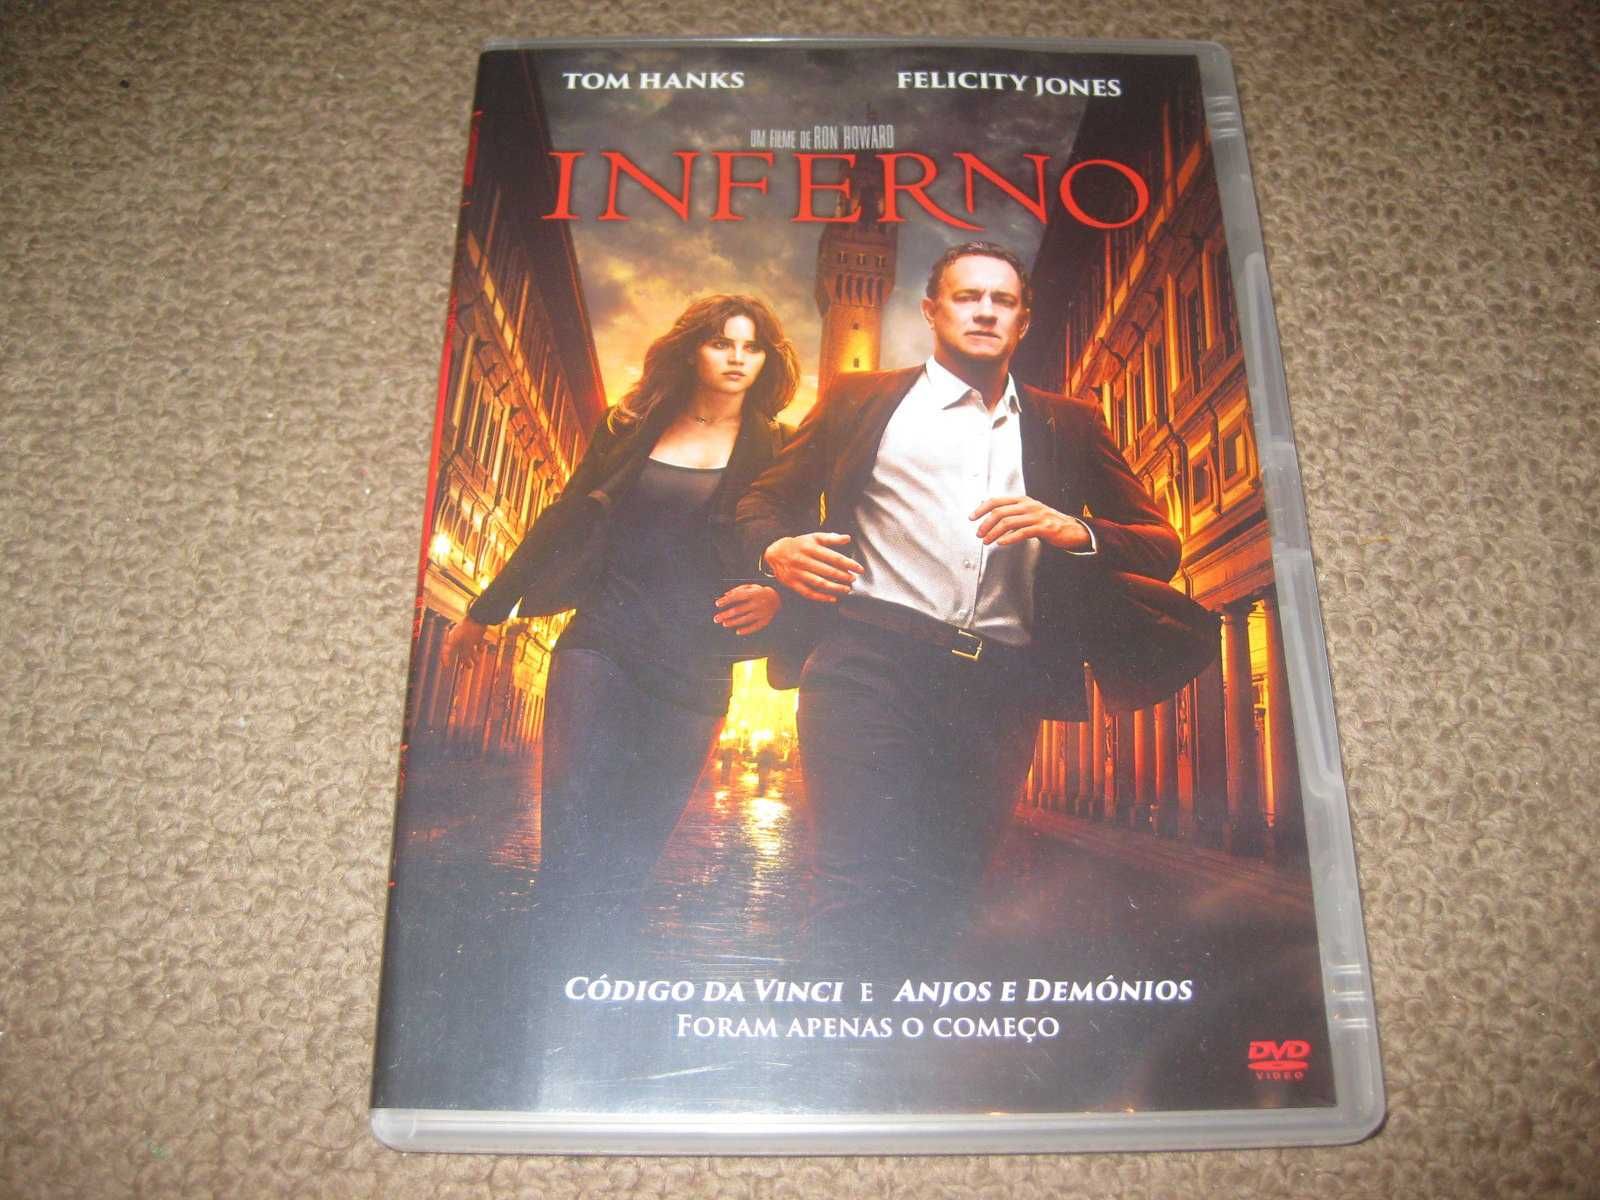 DVD "Inferno" com Tom Hanks